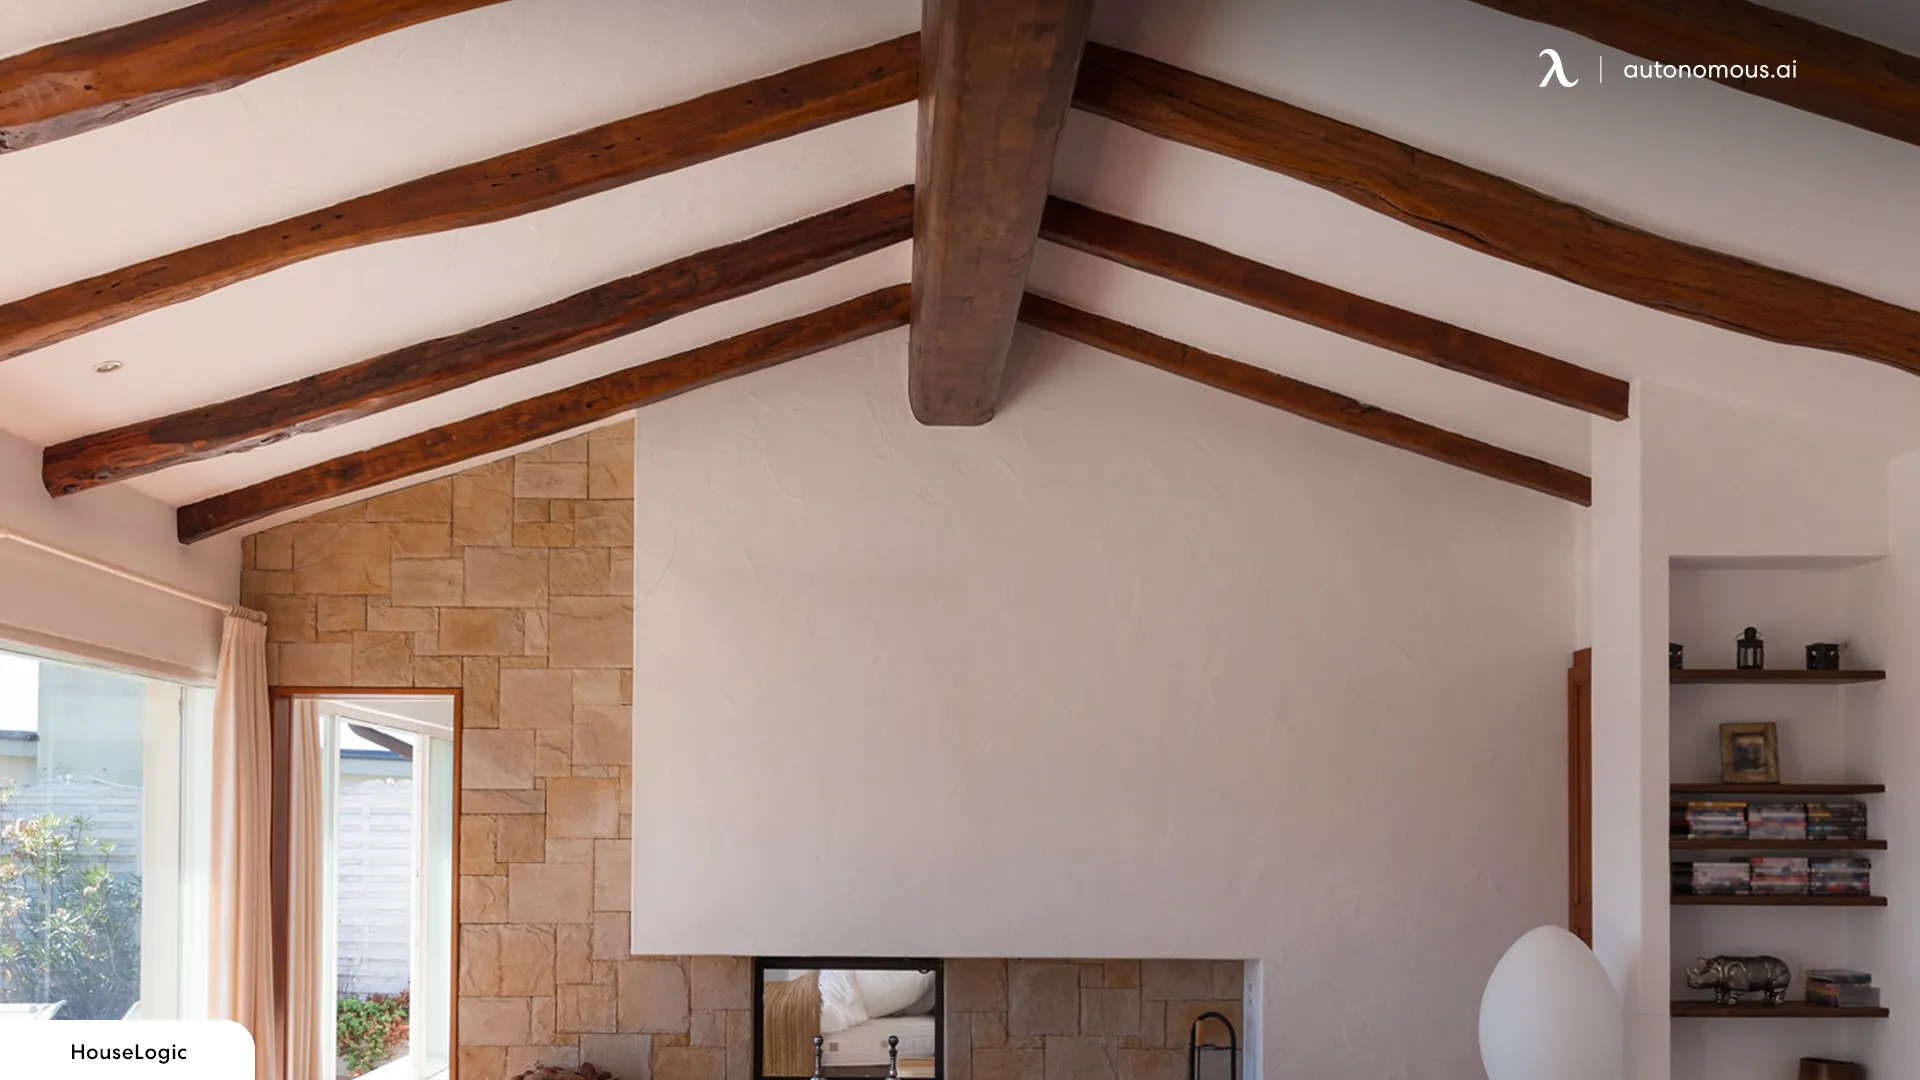 Create Vaulted Ceilings - Tiny house ceiling ideas